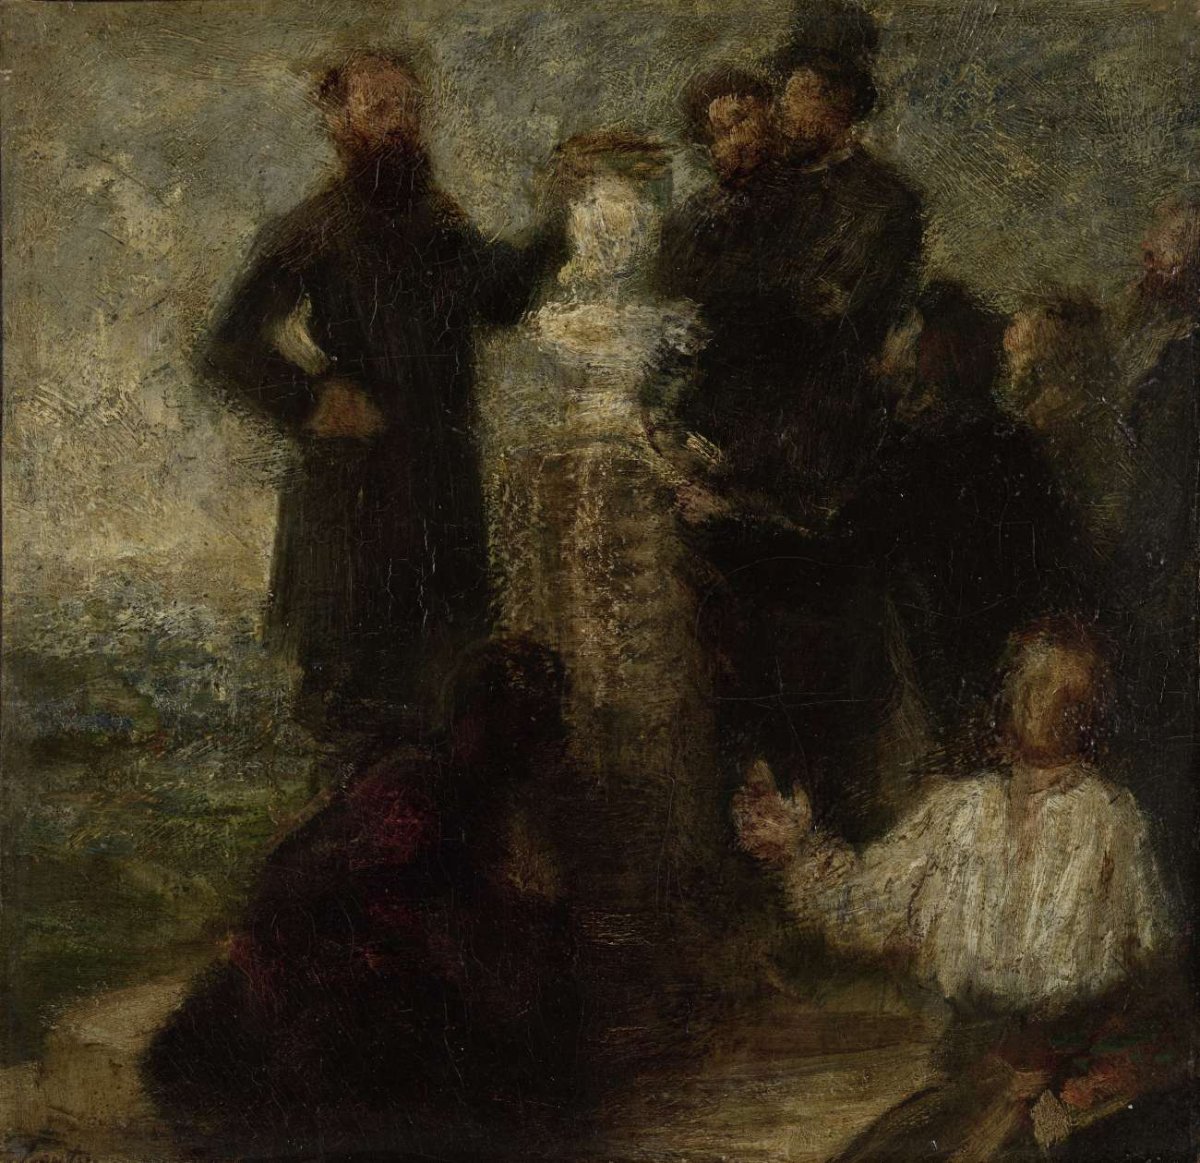 Esquisse pour l'Hommage à Delacroix, Henri Fantin-Latour, 1863 - 1864